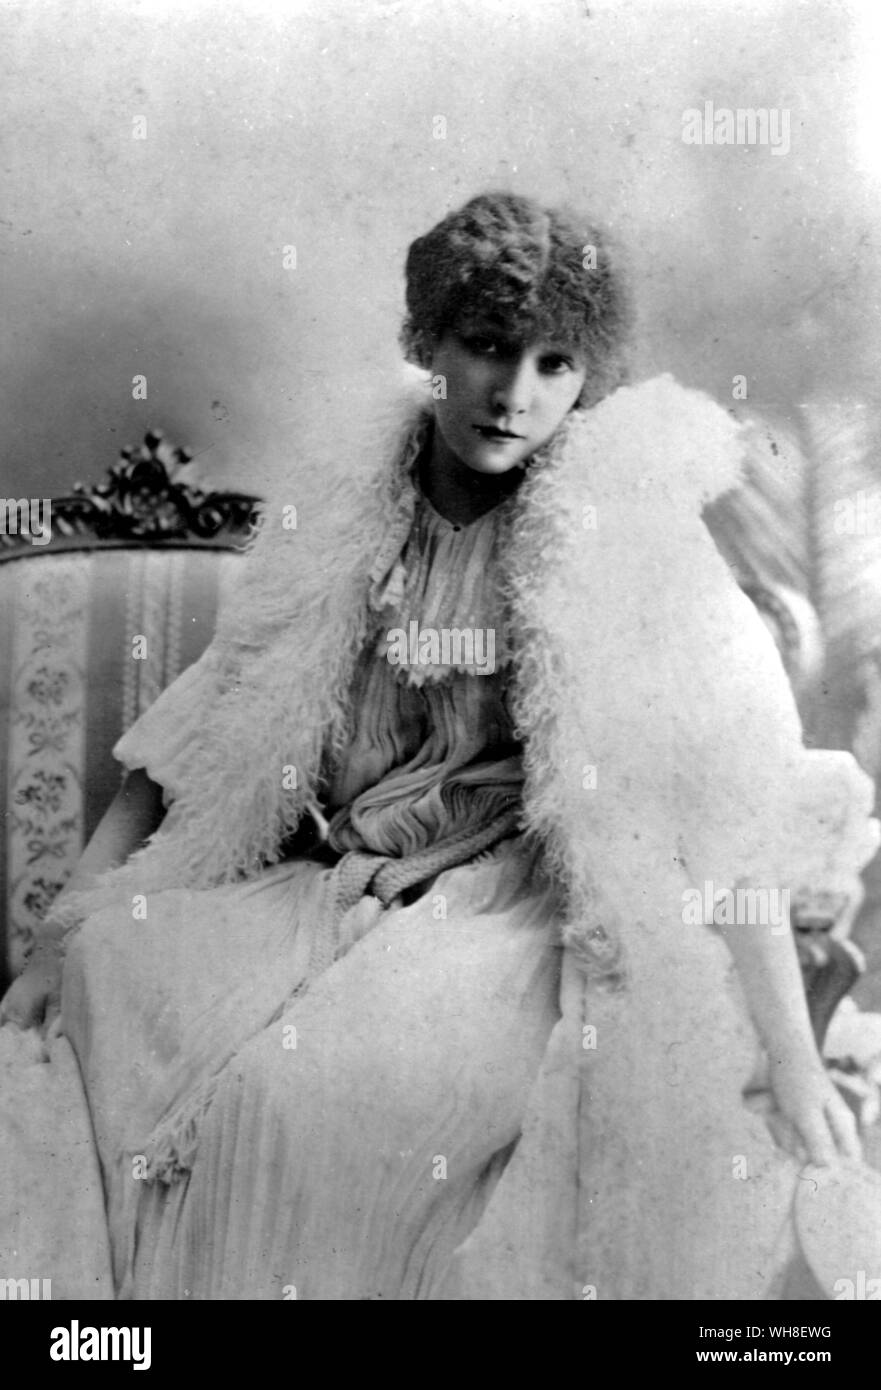 Sarah Bernhardt 1899, Stadium Name von Henriette Rosine Bernard, (1844-1923). Die französische Schauspielerin. Bernhardt war auch einer der Pioniere Stummfilm Schauspielerinnen. Stockfoto